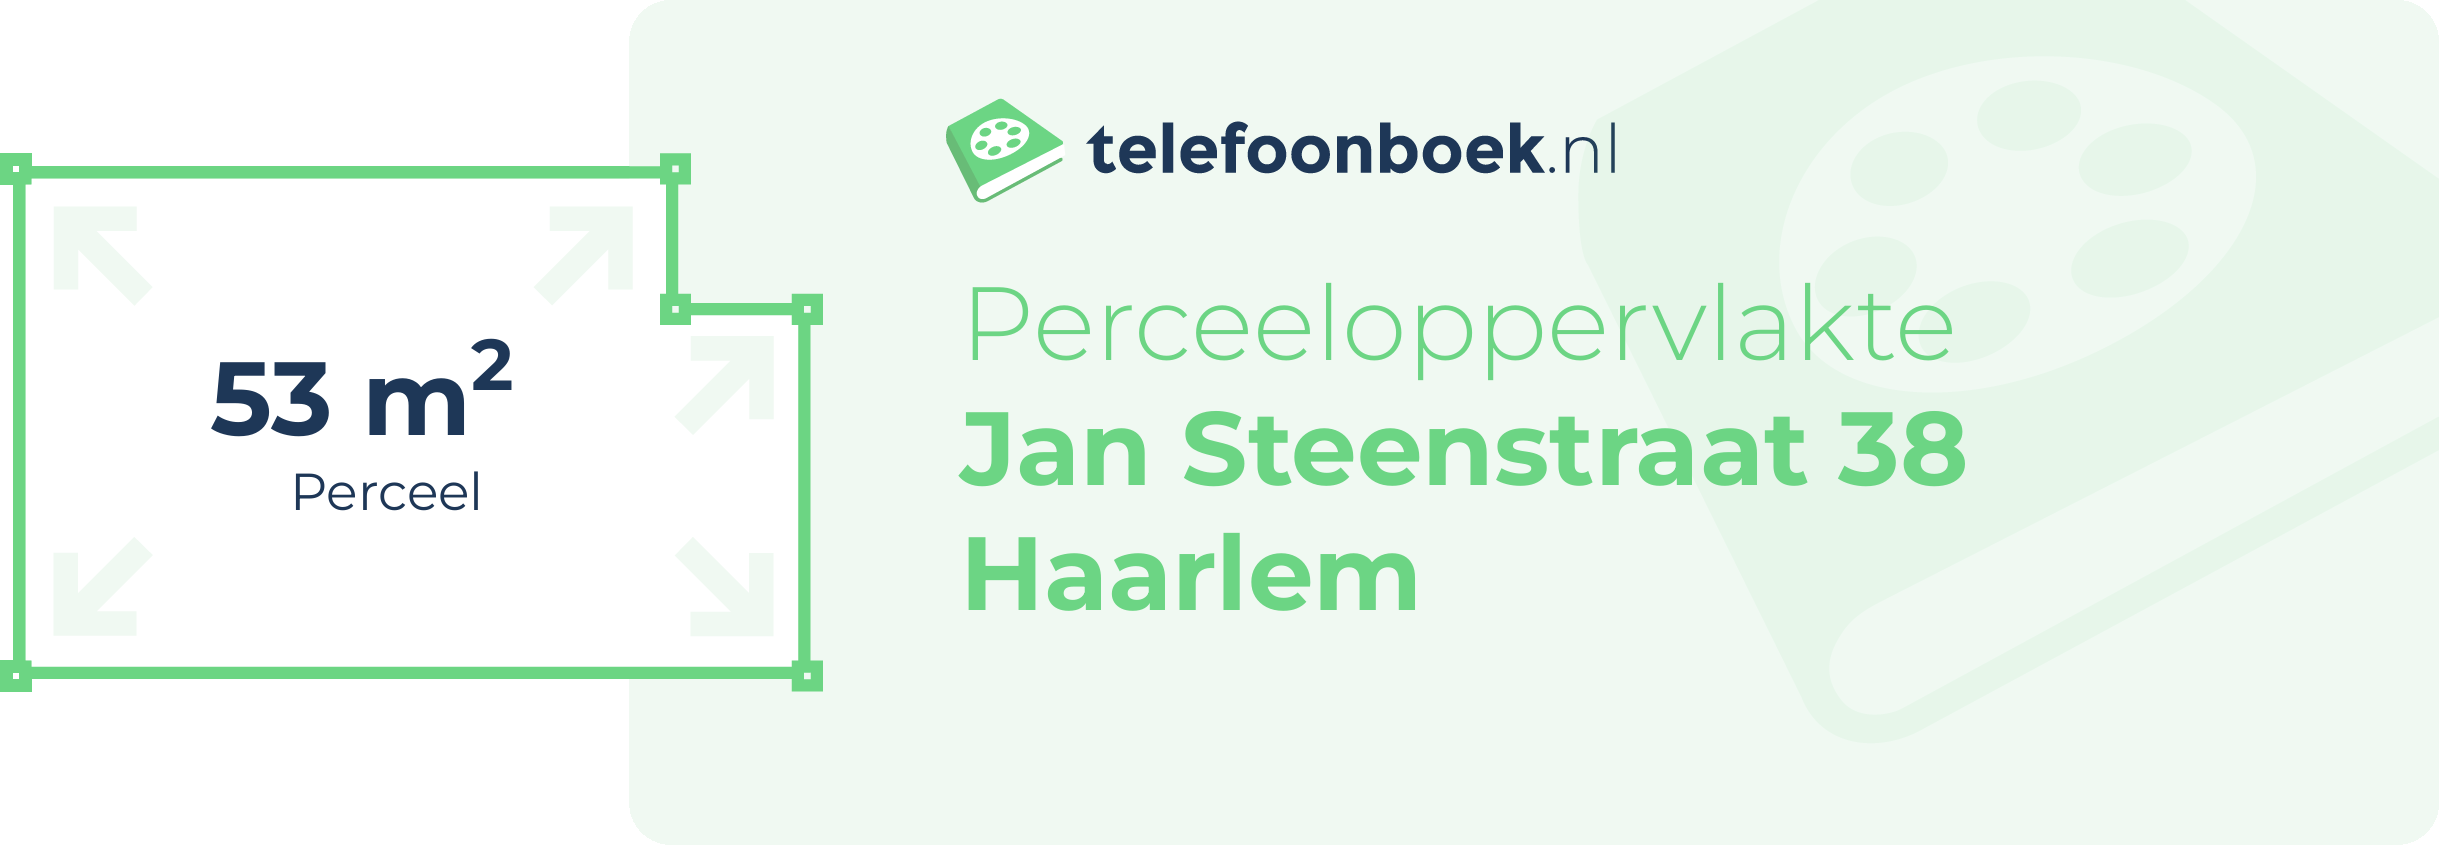 Perceeloppervlakte Jan Steenstraat 38 Haarlem